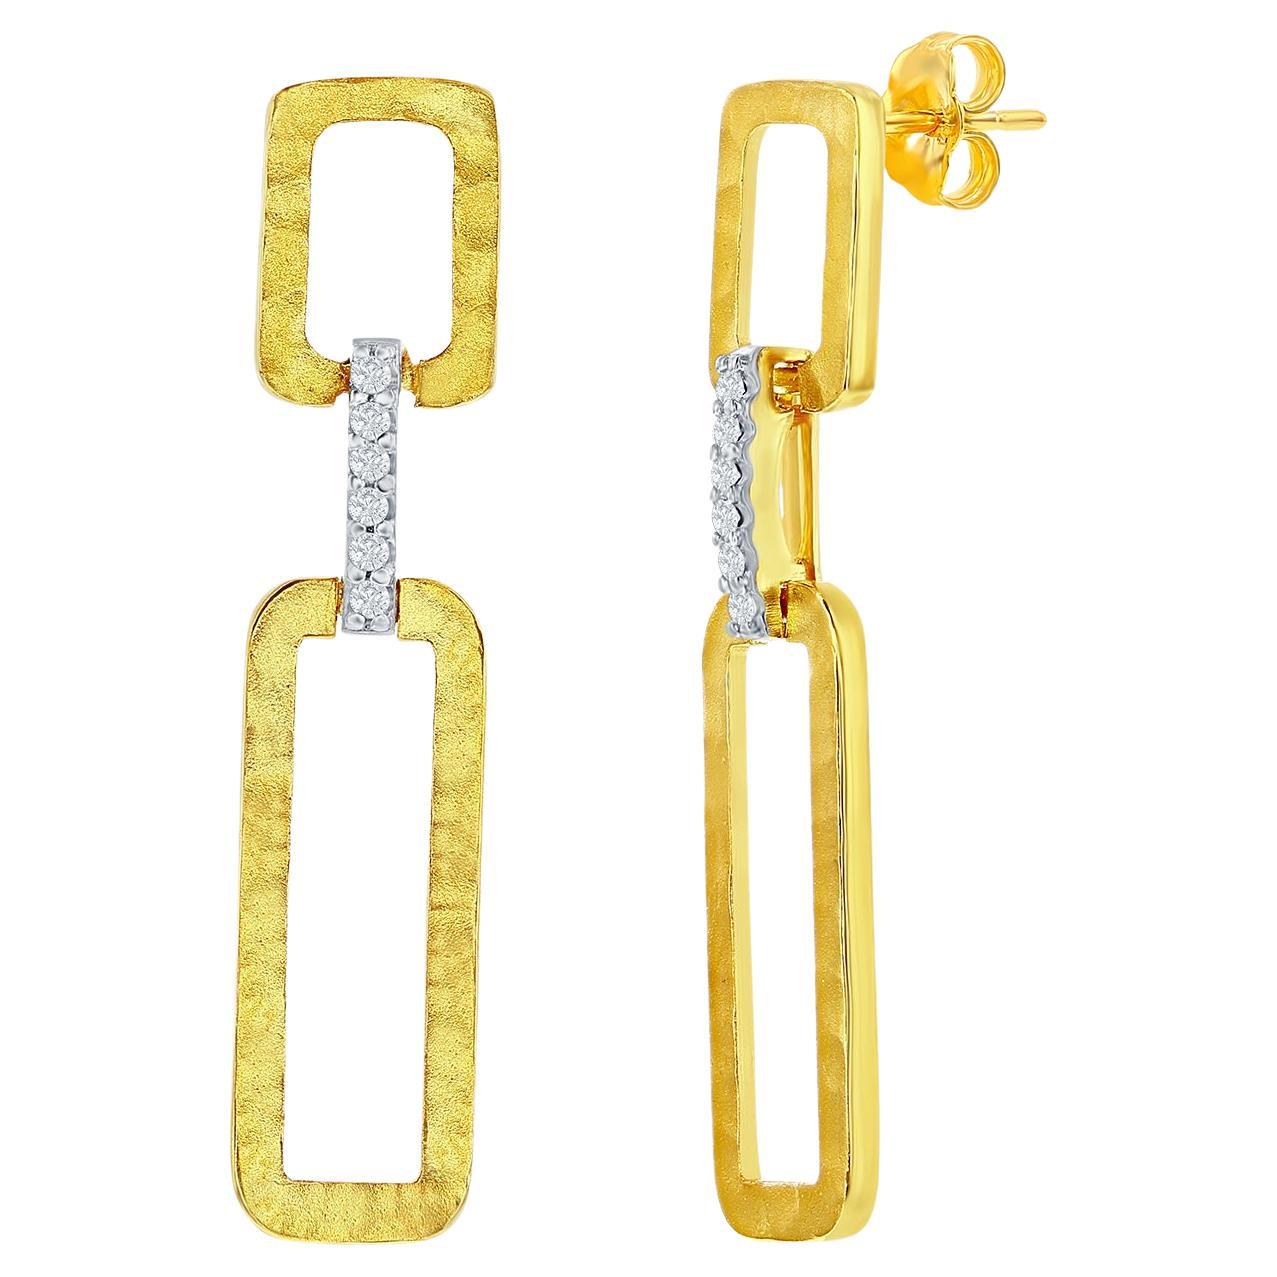 Handgefertigte Ohrringe aus 14K Gelbgold mit baumelnden, offenen, rechteckigen Gliedern